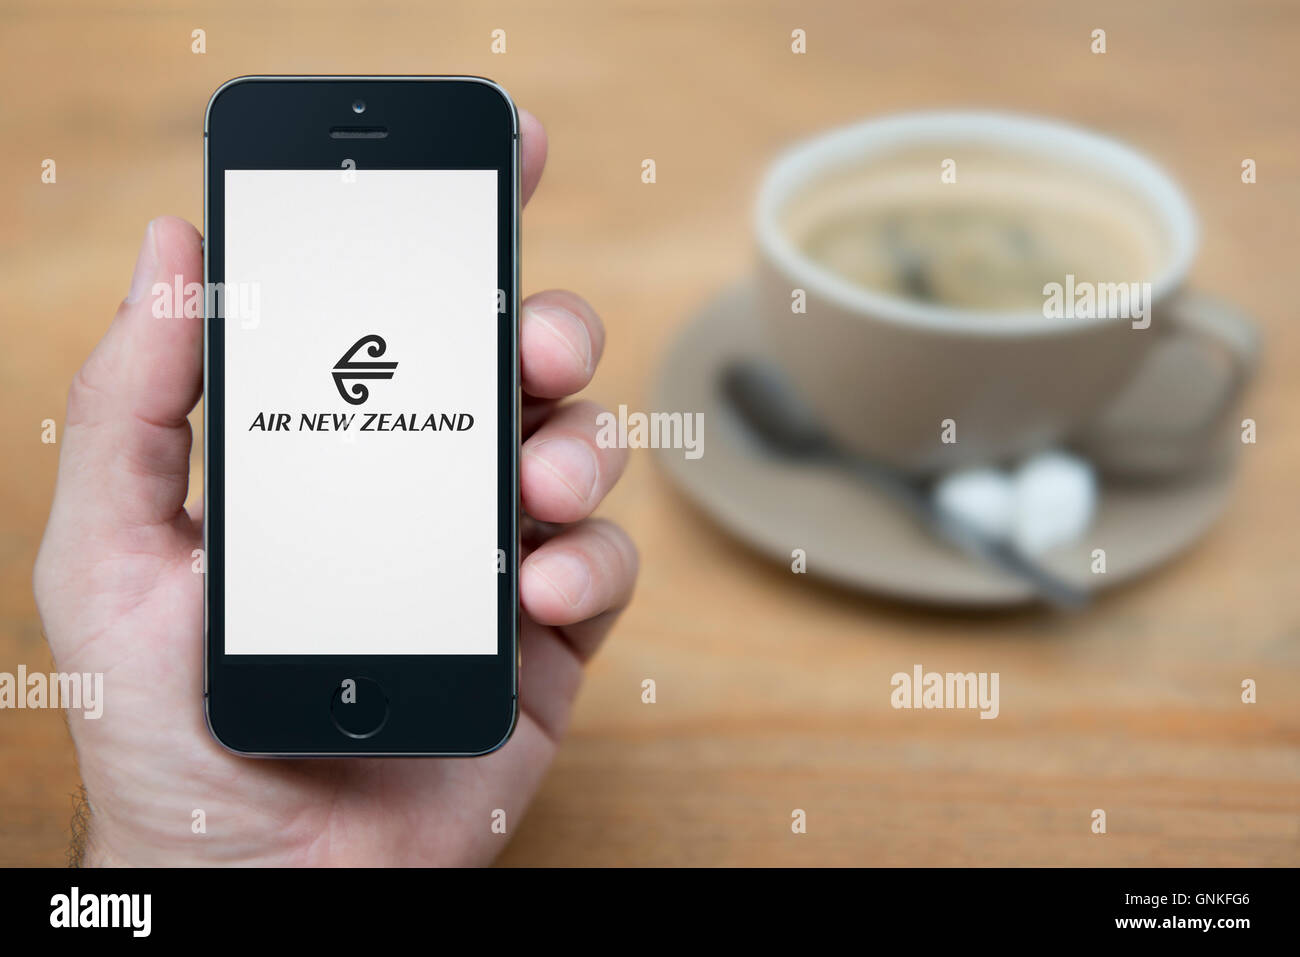 Ein Mann schaut auf seinem iPhone die zeigt die Air New Zealand logo, während sie Sitzen mit einer Tasse Kaffee (nur redaktionelle Nutzung). Stockfoto